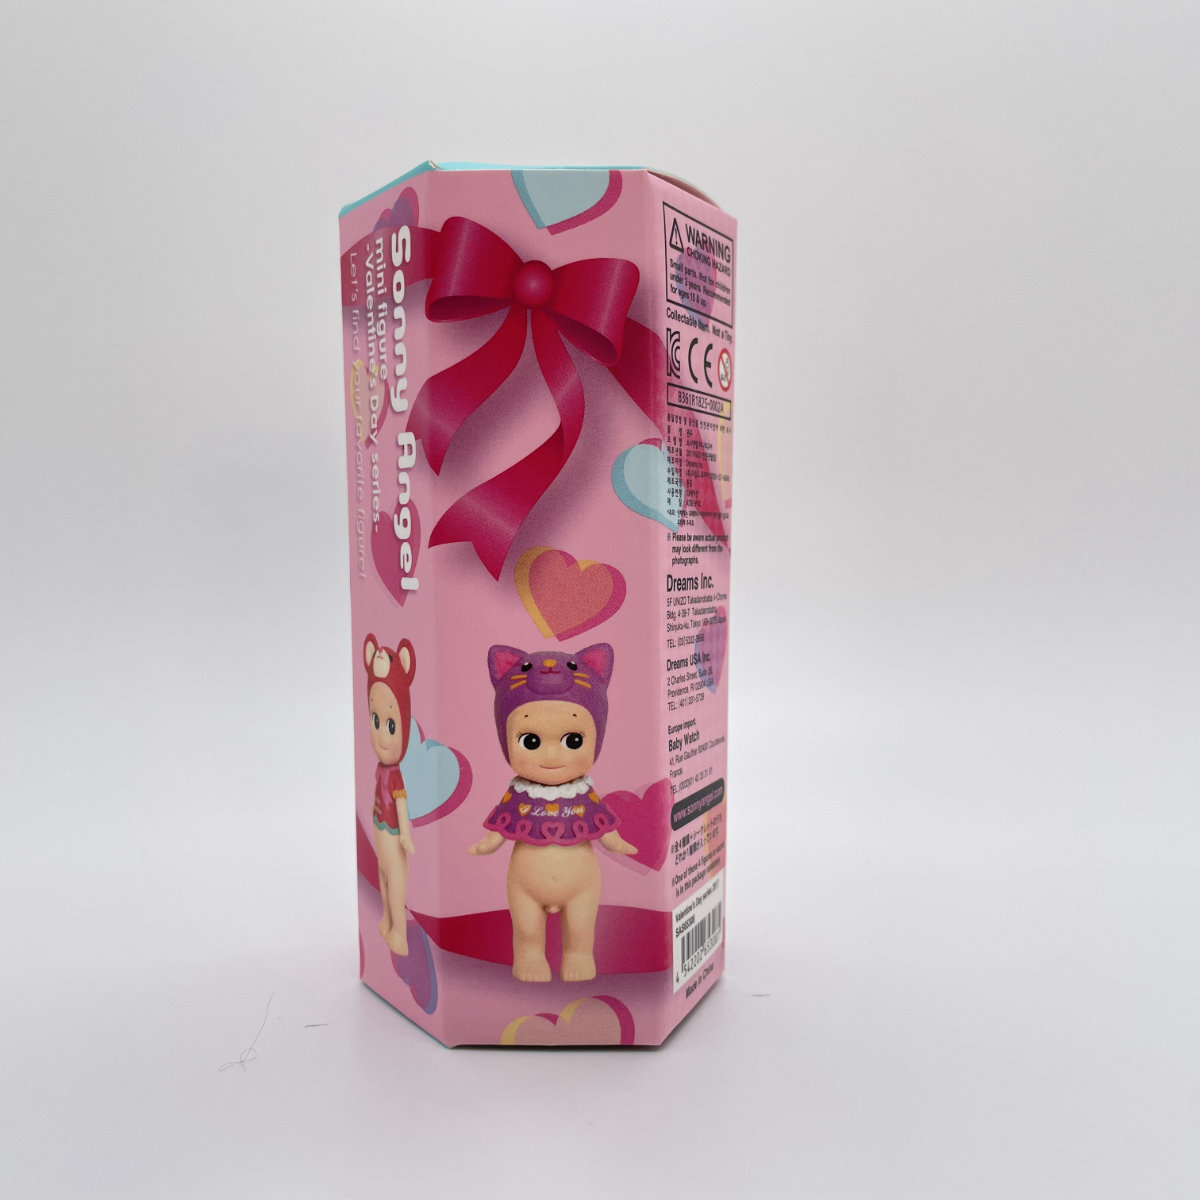 Sonny Angel Mini Figure 2017 Série de la Saint-Valentin Blind Box Box Cute Figurine Dolls Toy pour fille